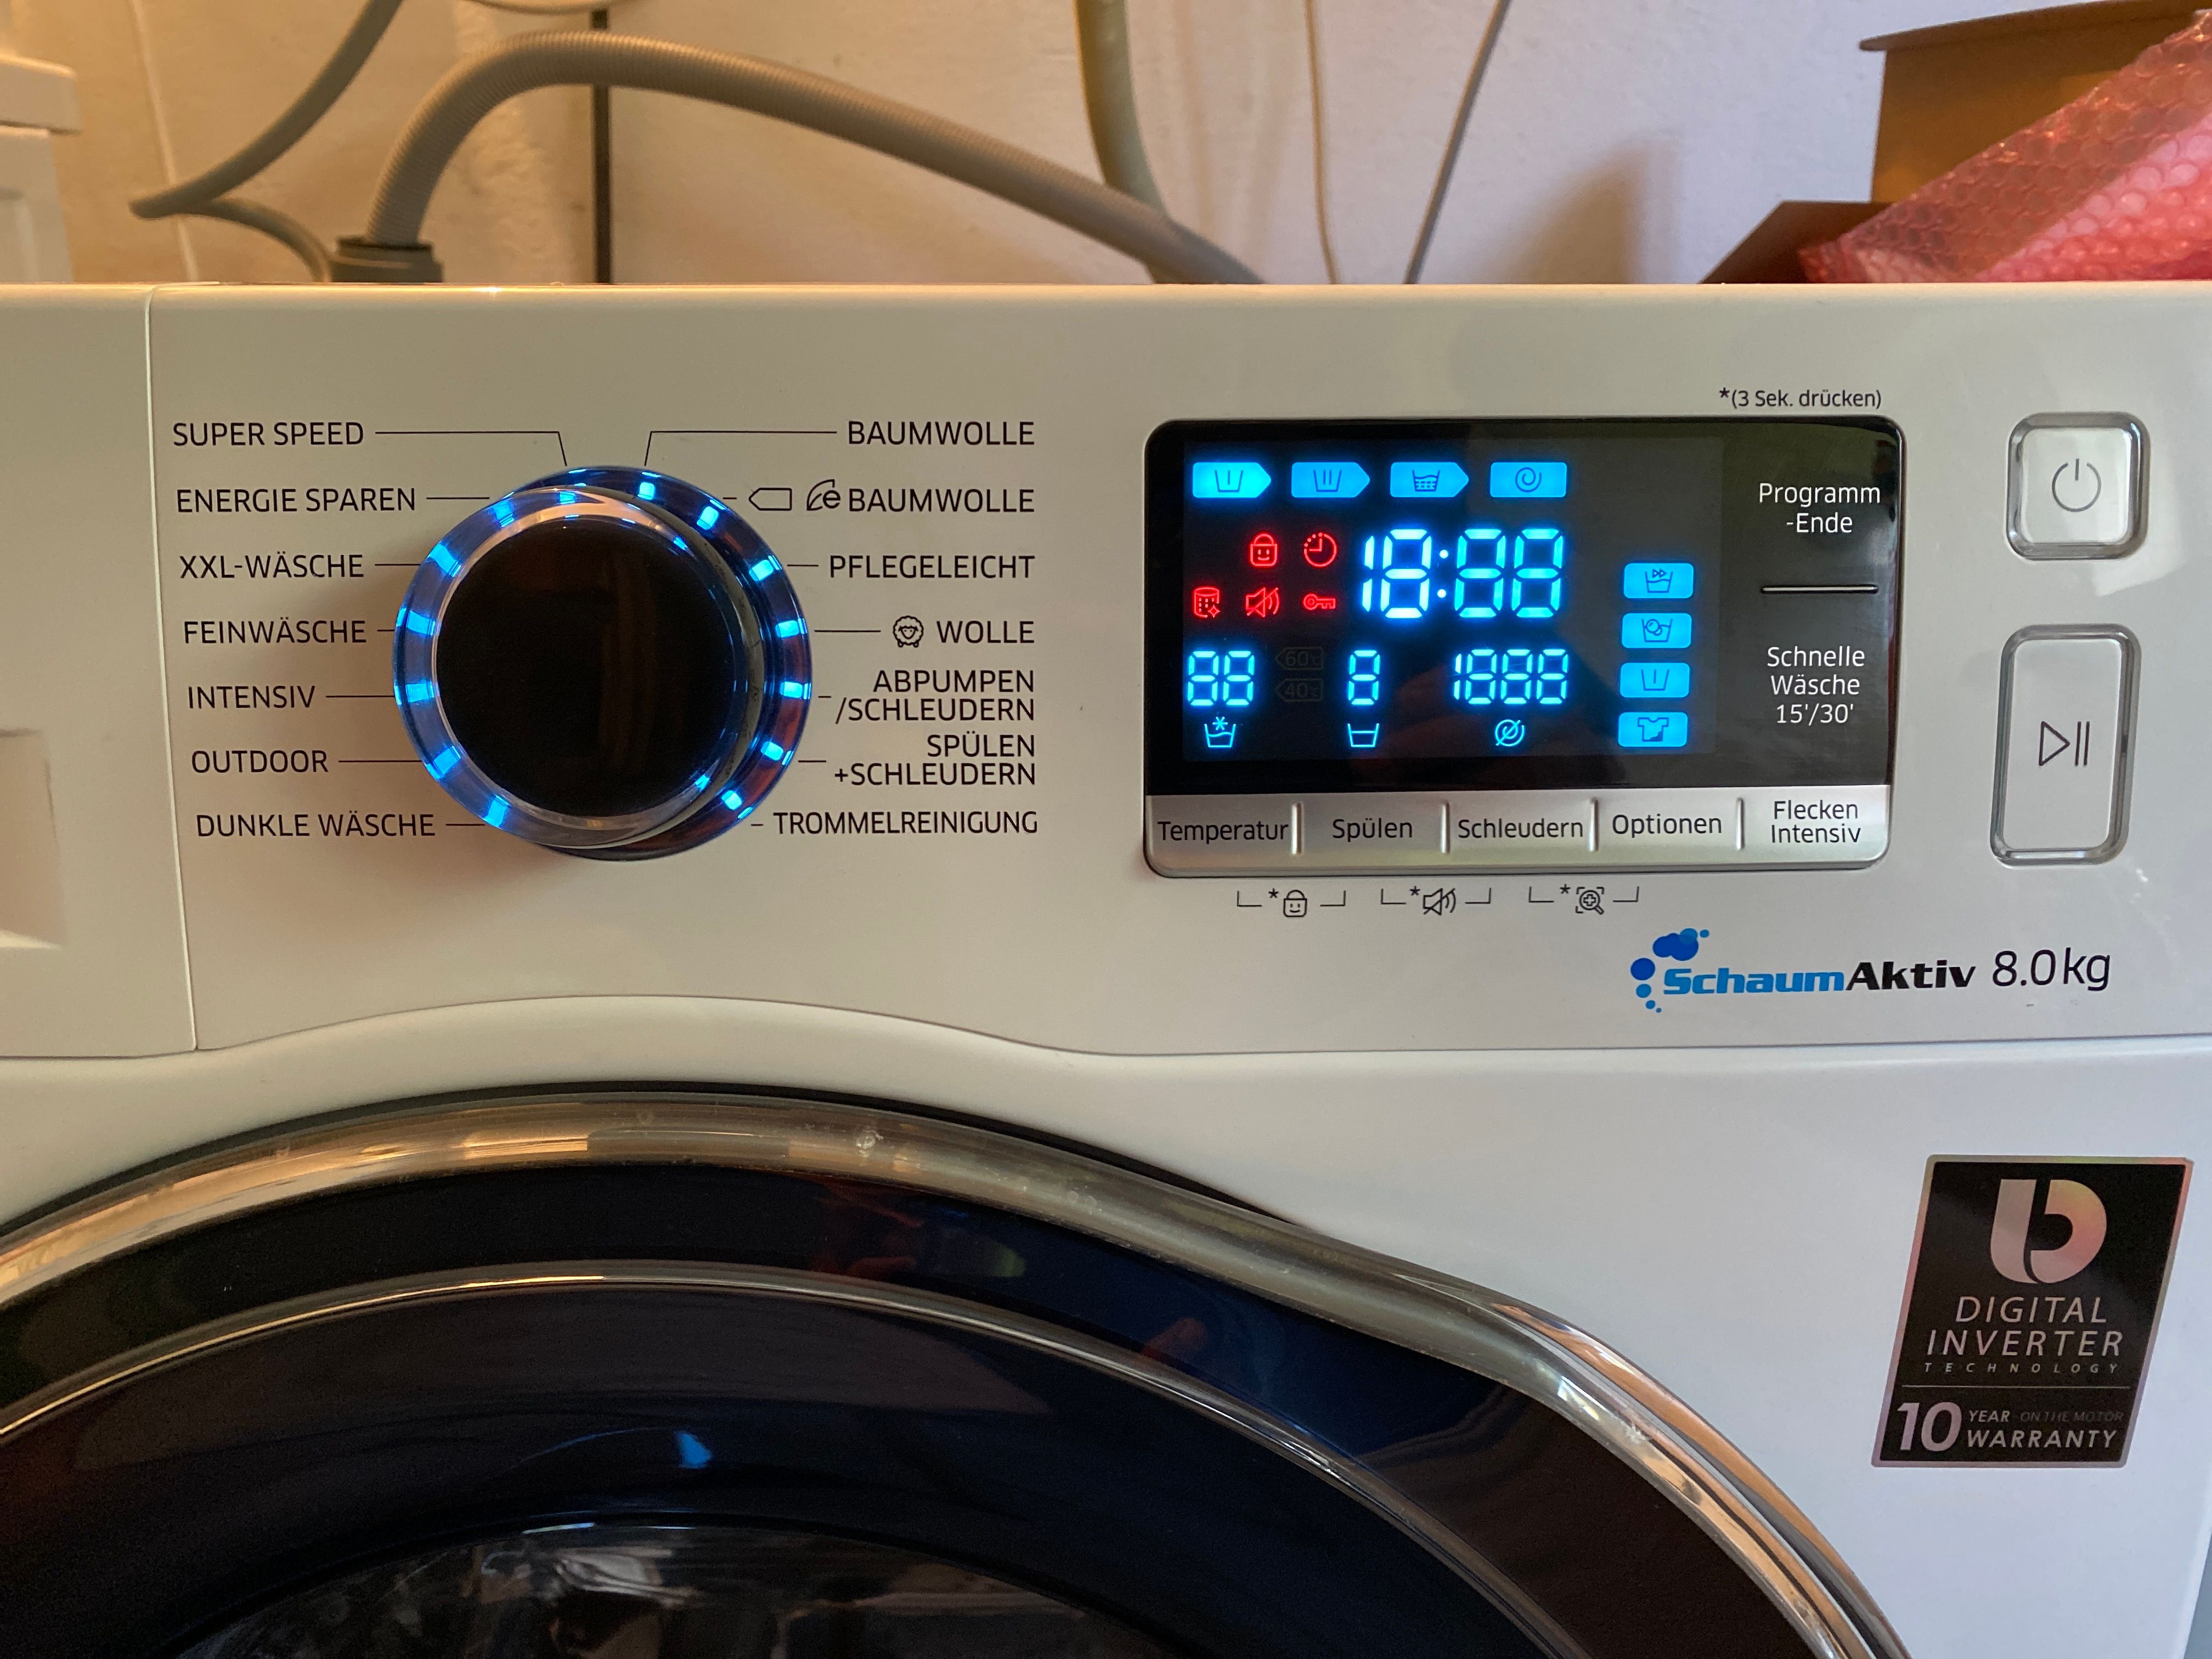 Waschmaschine Display blinkt - Samsung Community